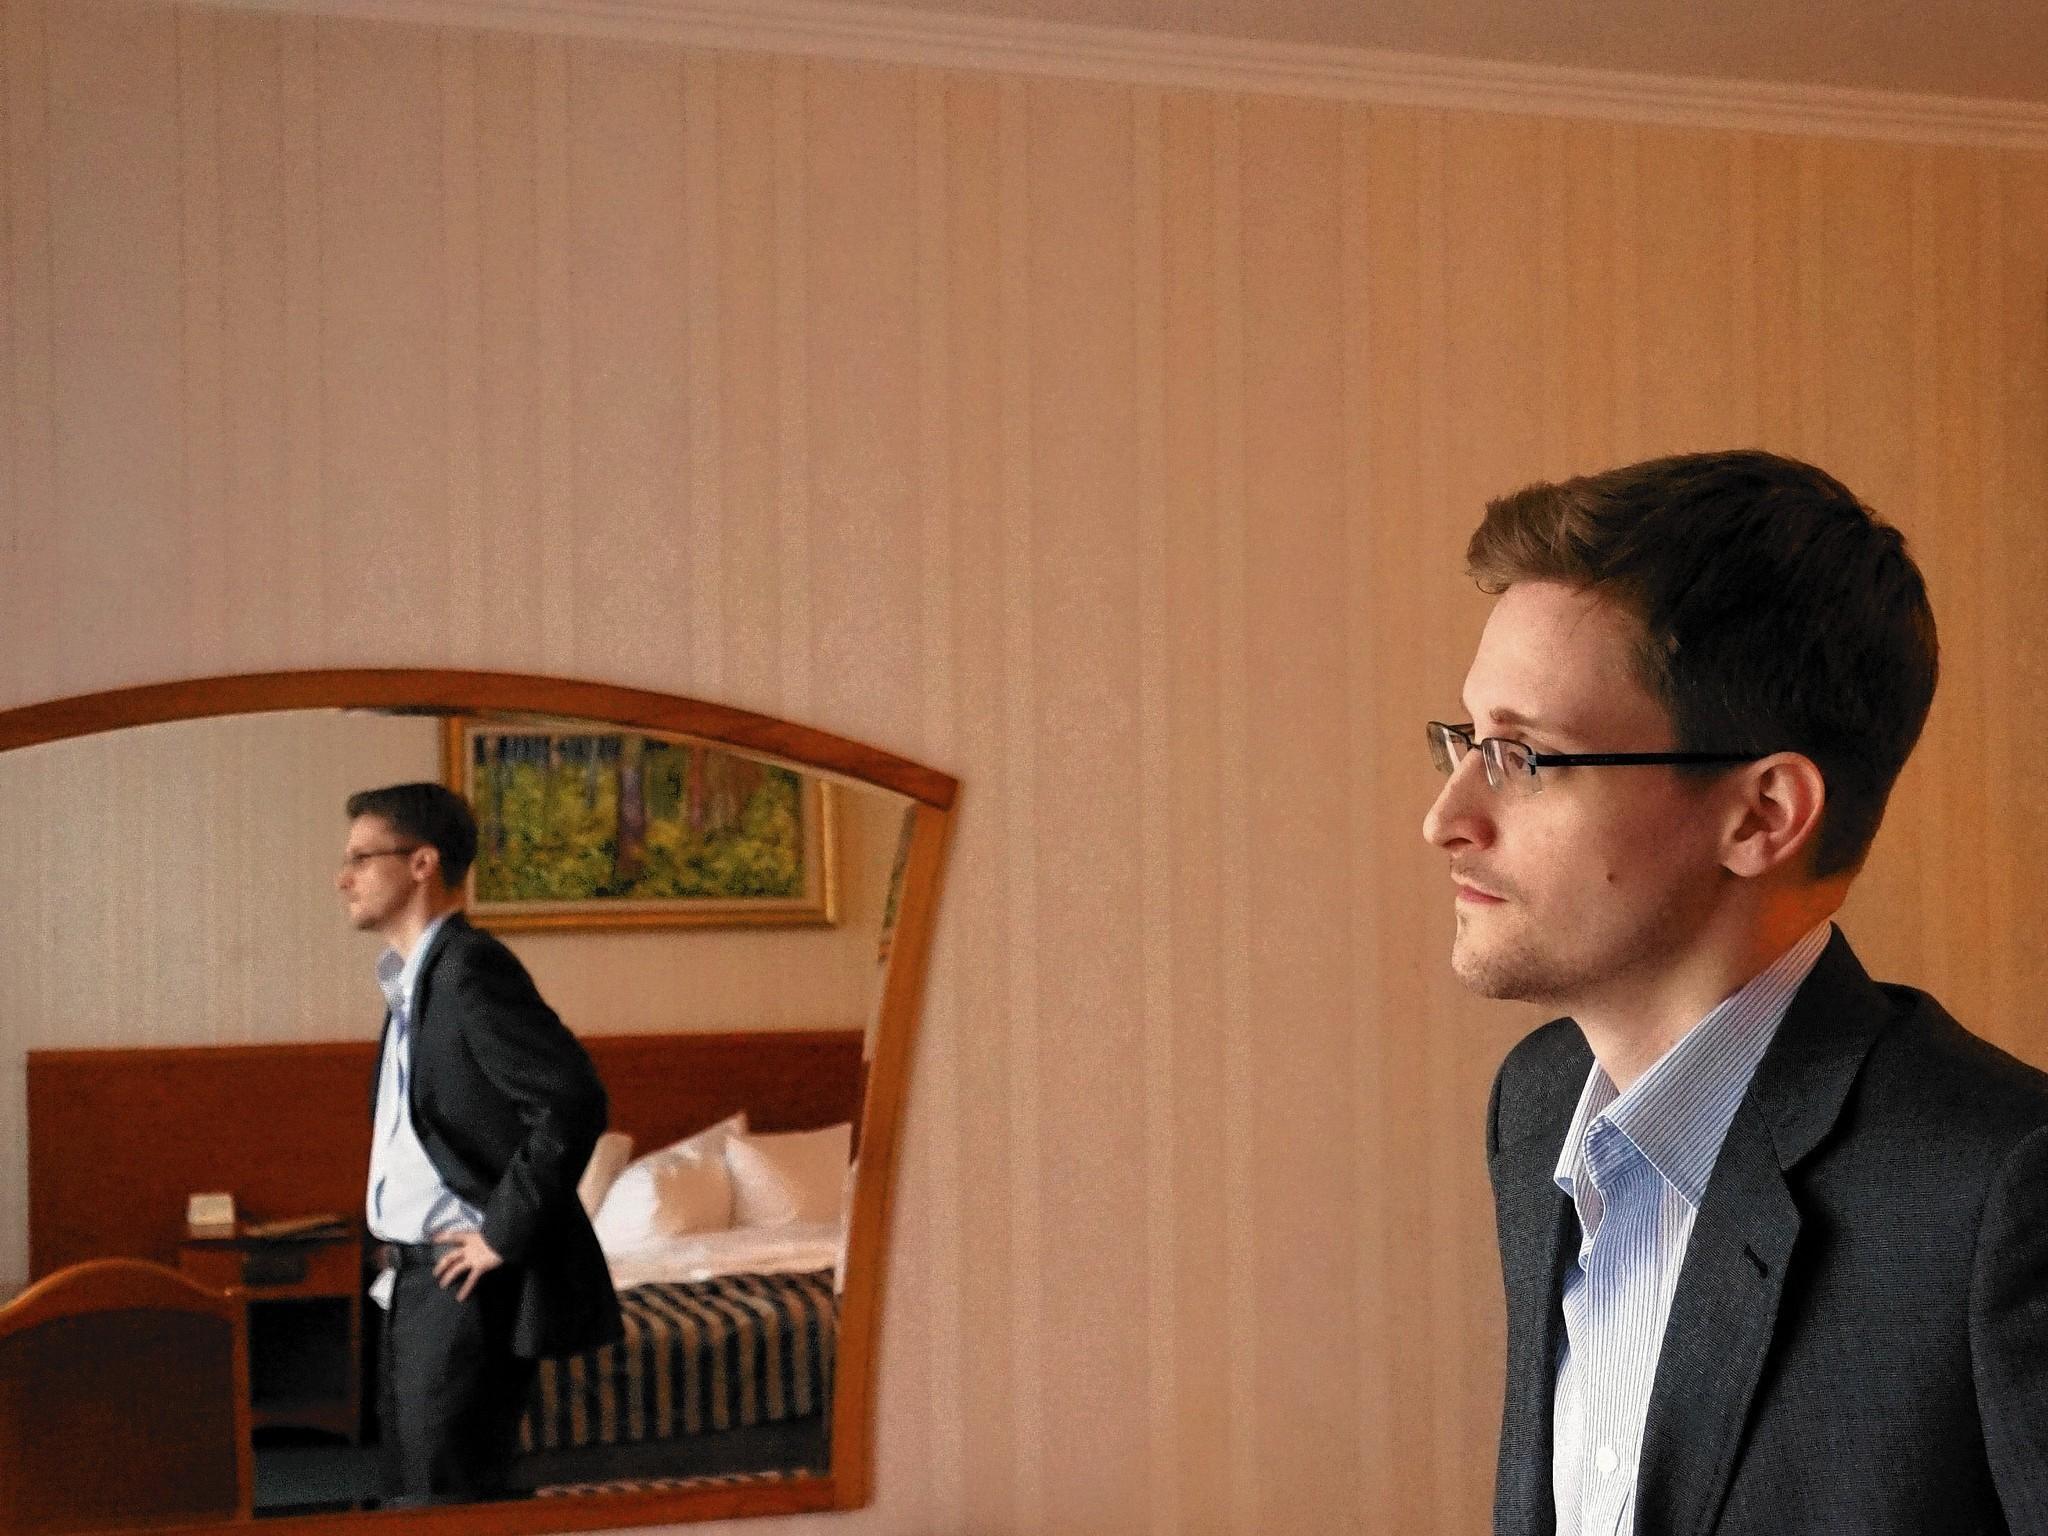 No amnesty for Edward Snowden